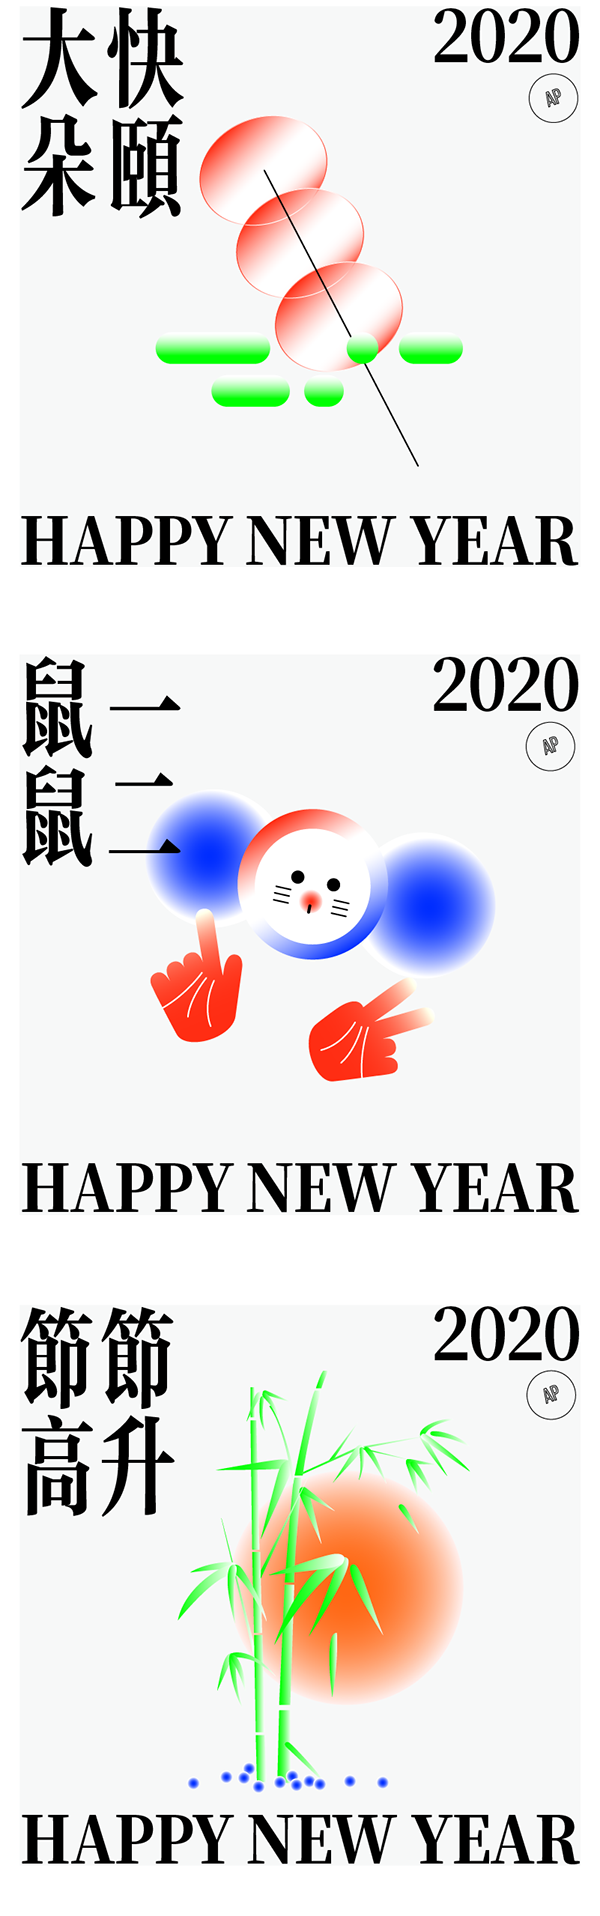 新年快乐HAPPY NEW YEAR